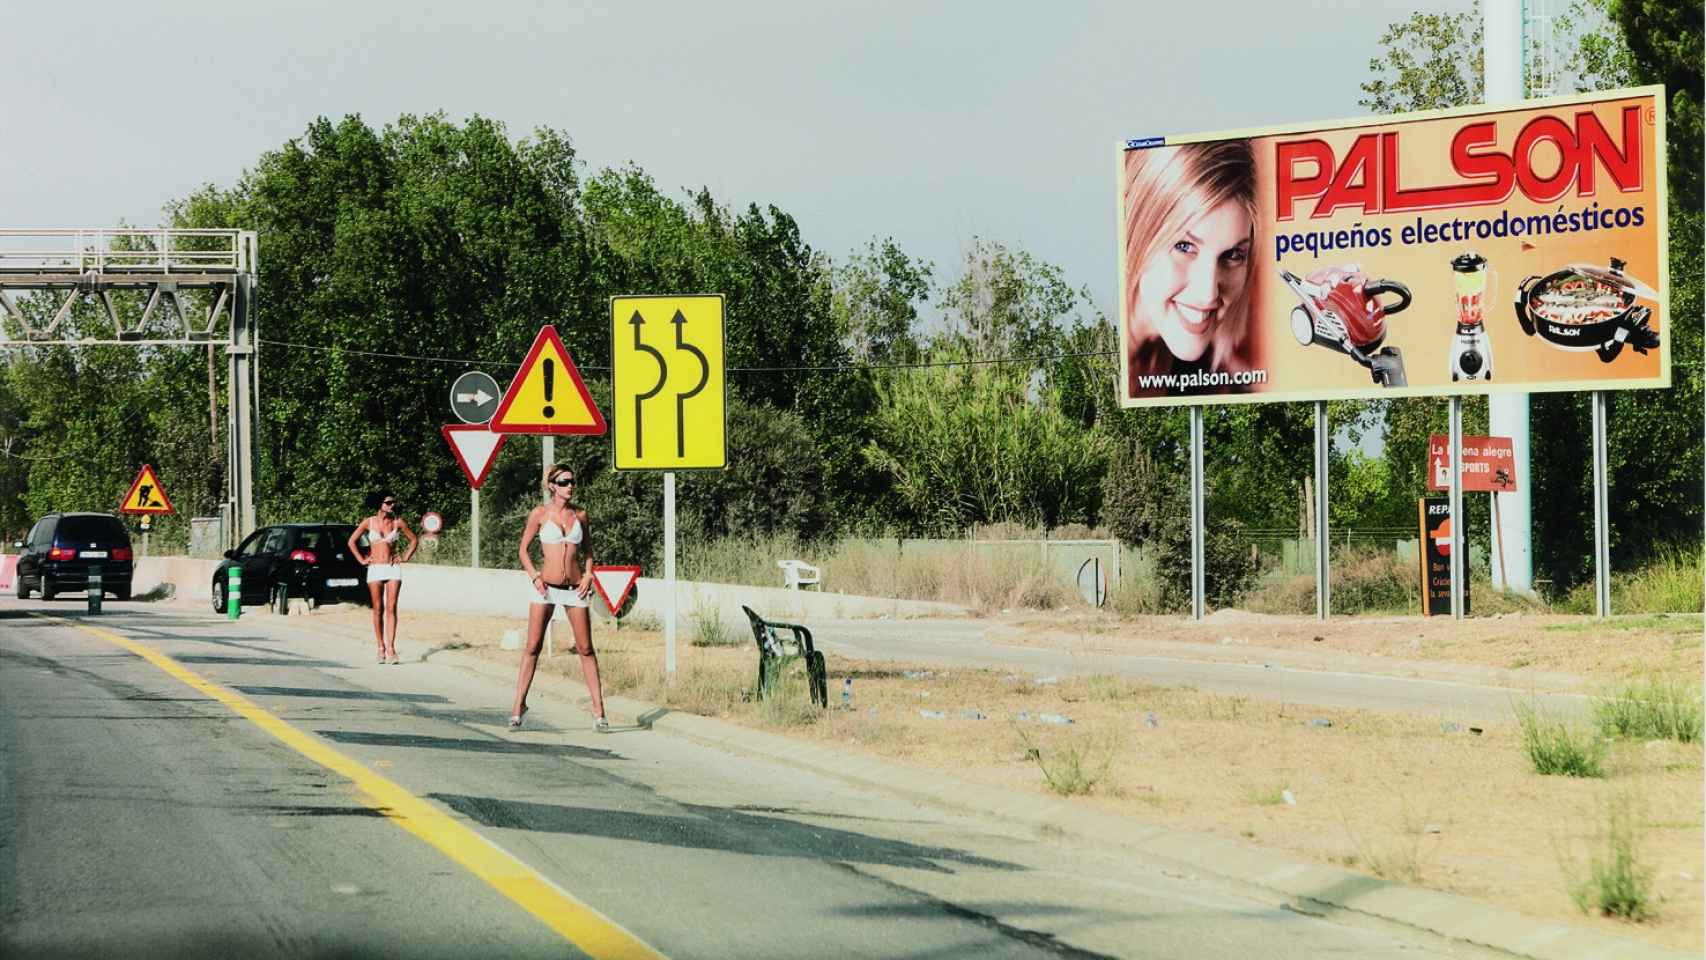 Prostitutas en la autovía C-31 en una imagen de archivo